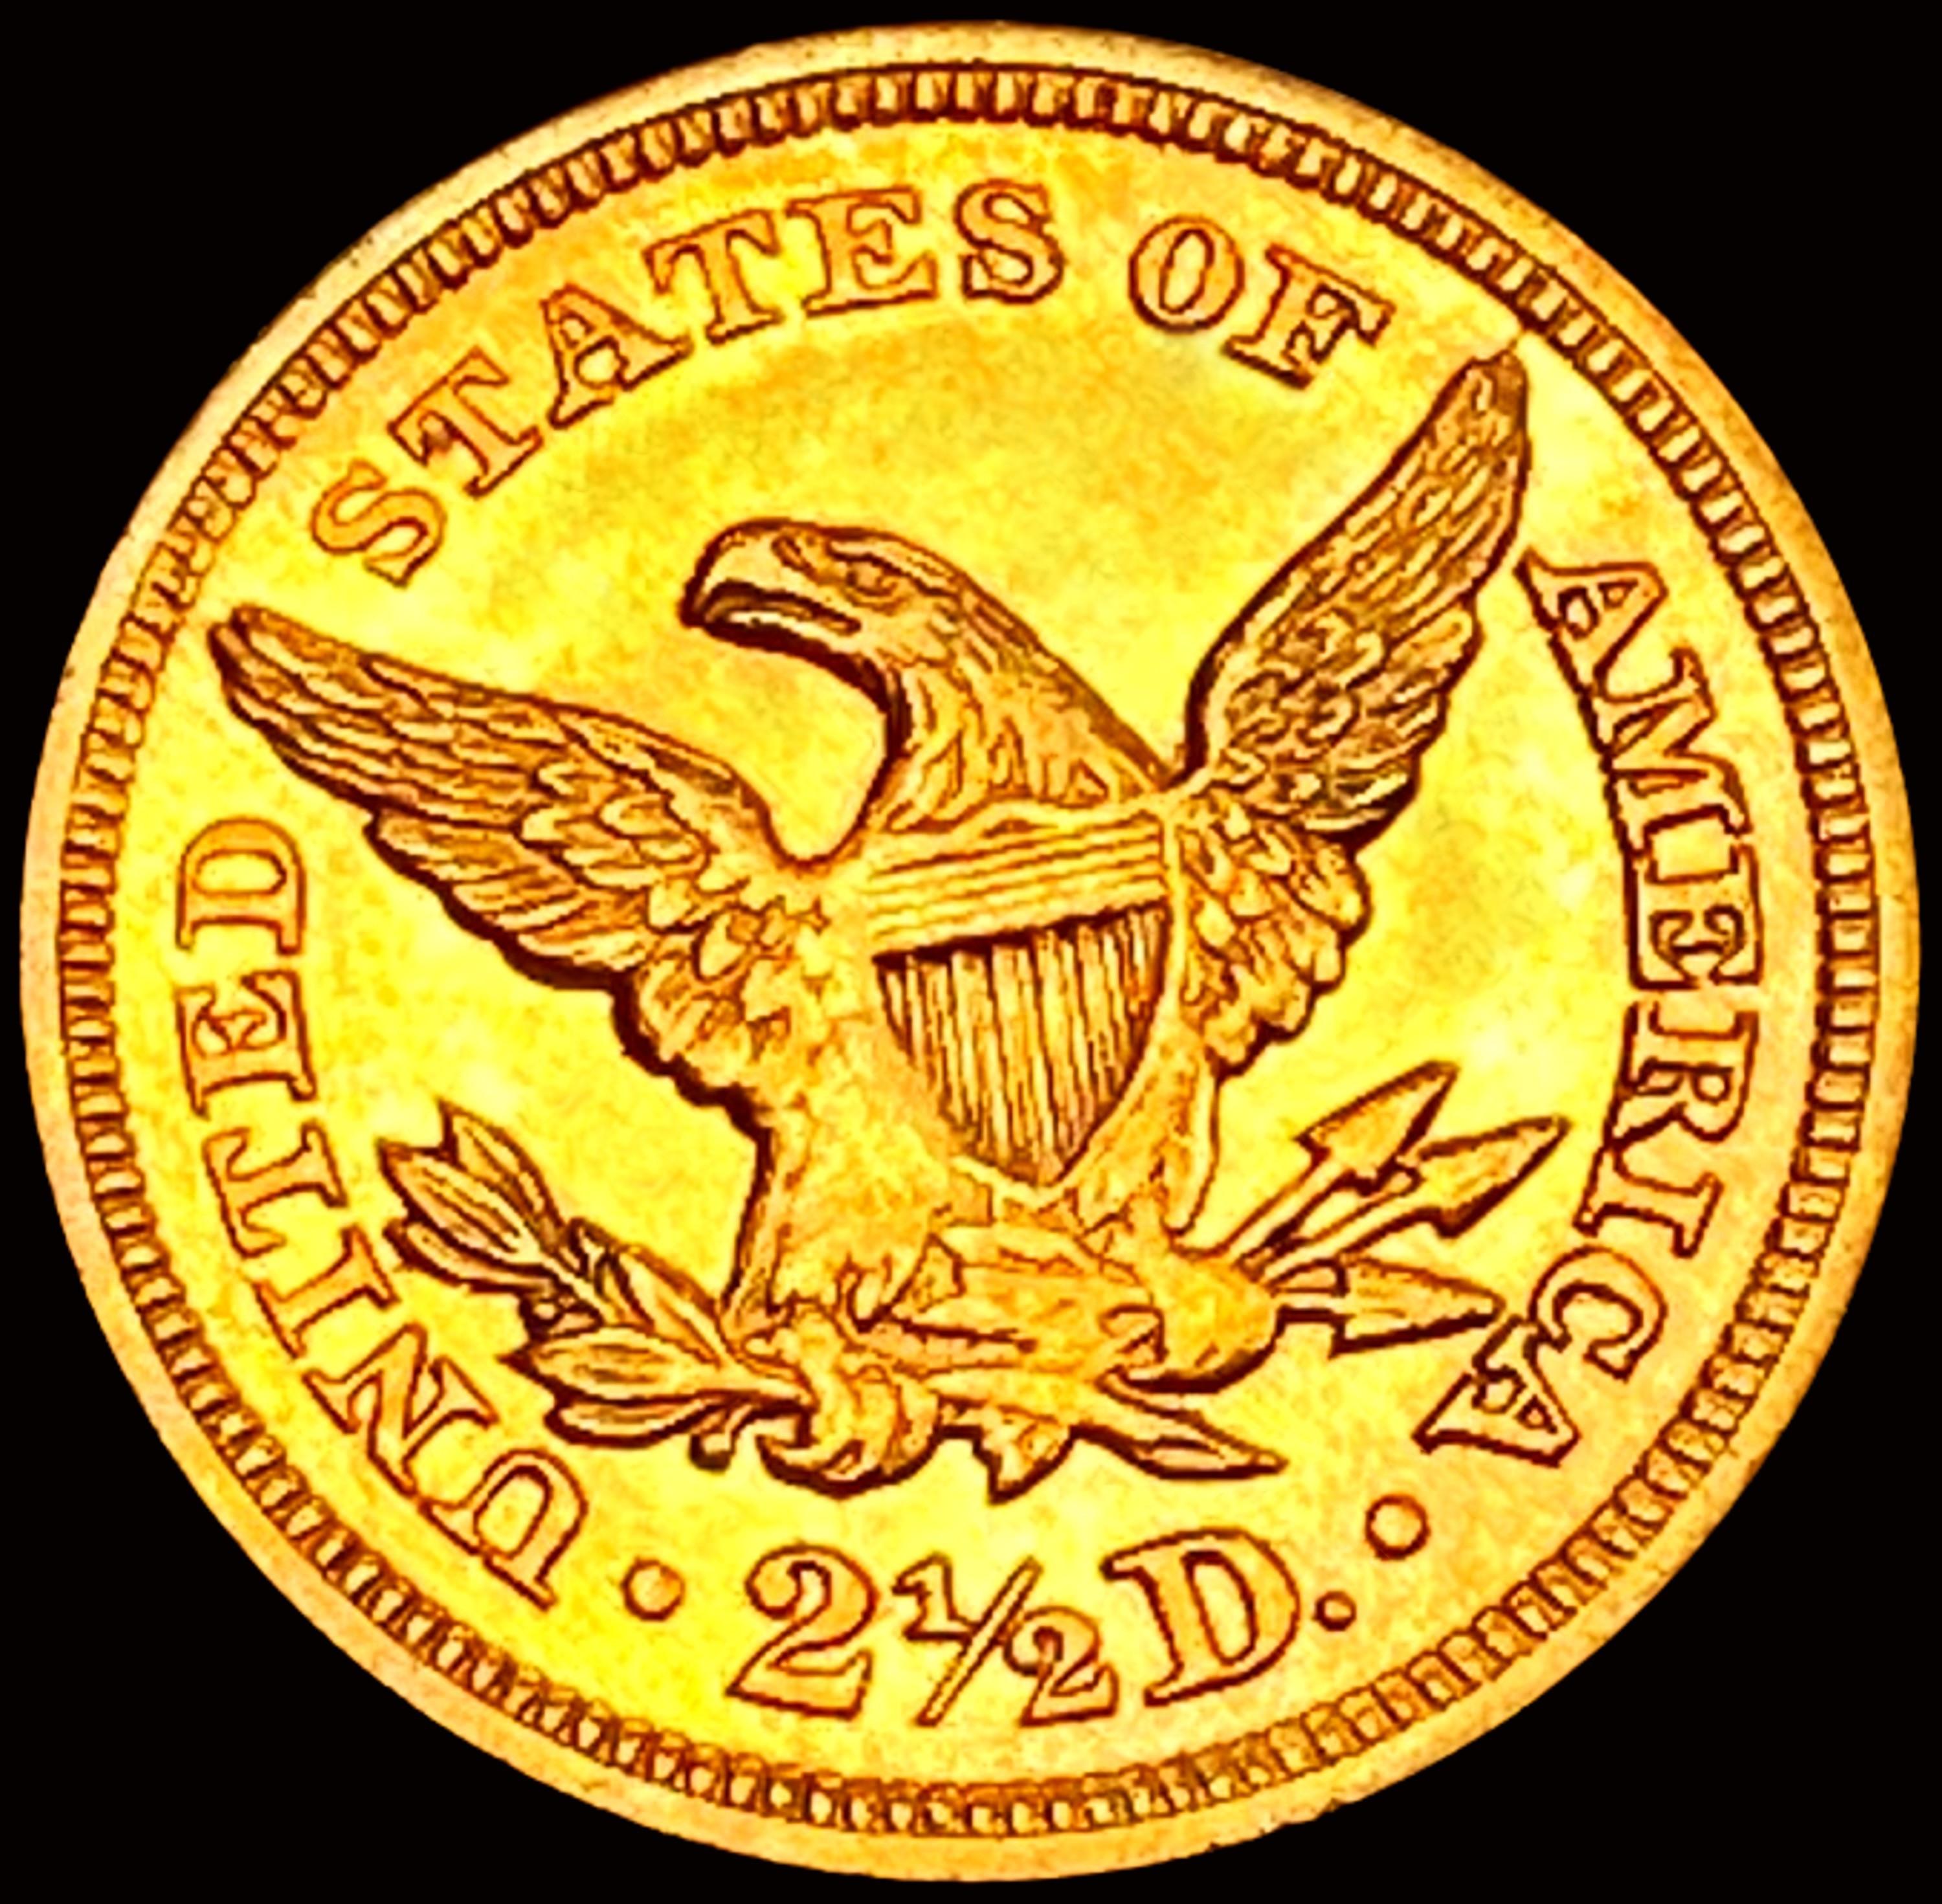 1847 $2.50 Gold Quarter Eagle GEM BU PL